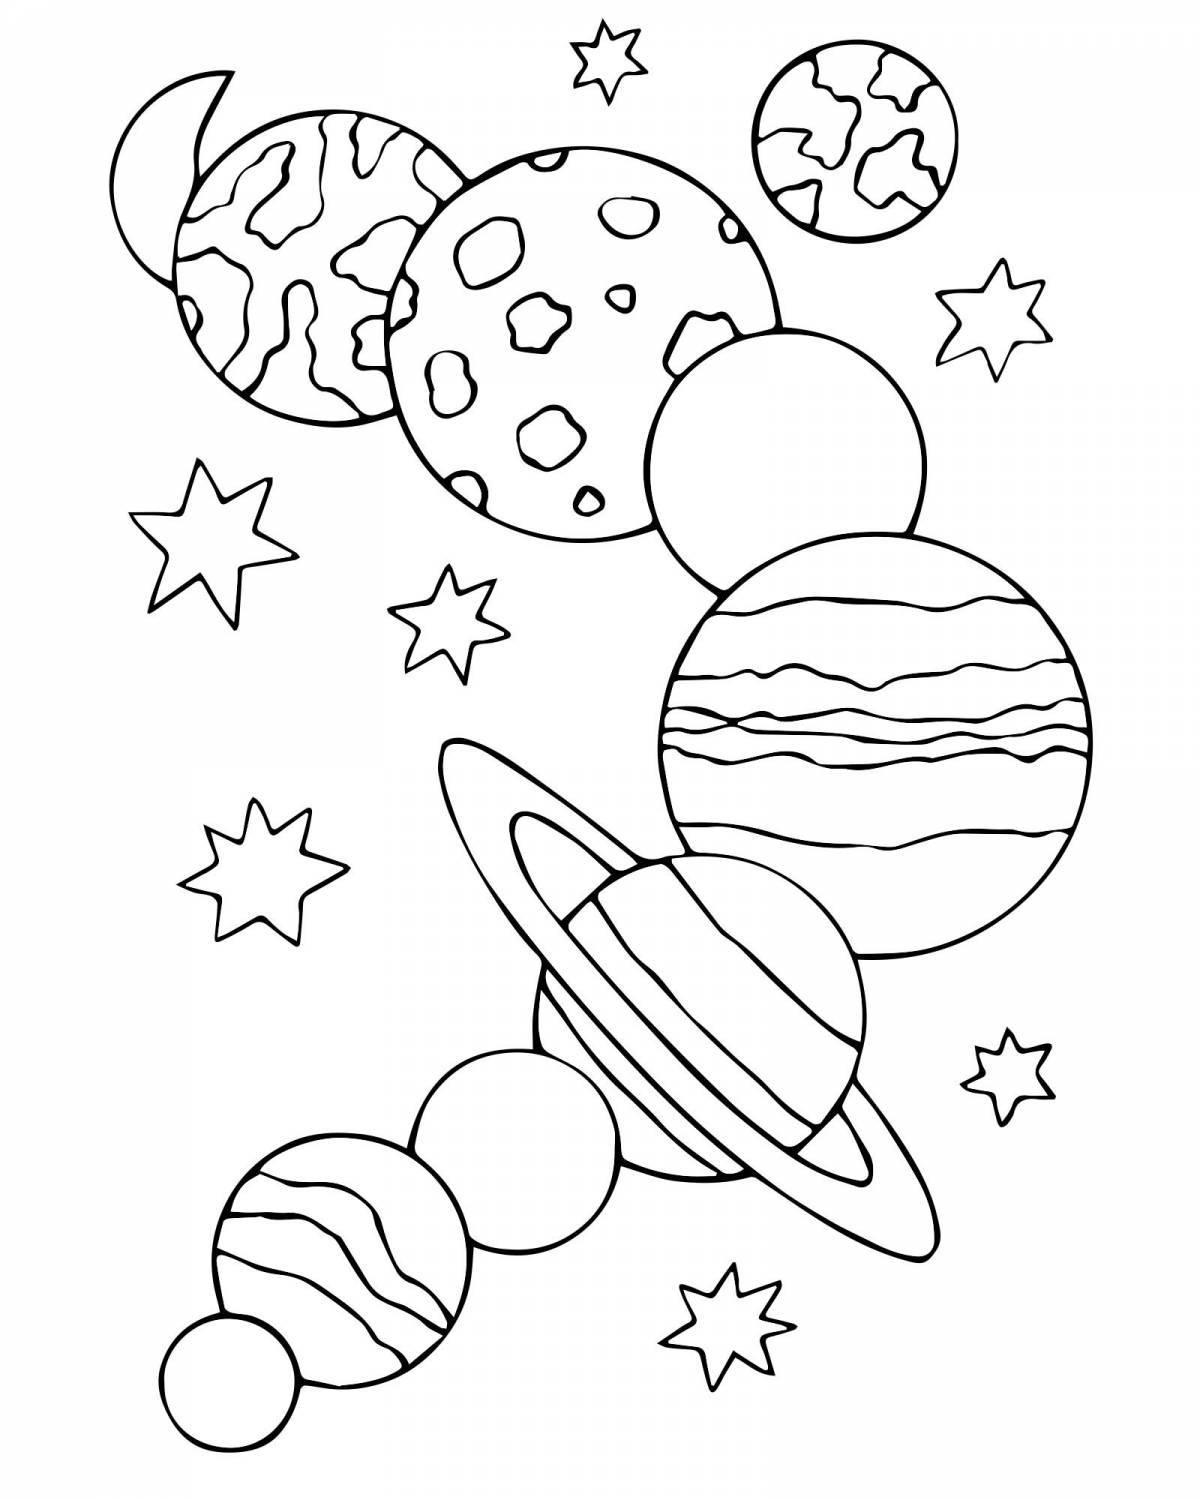 Увлекательная космическая раскраска для детей